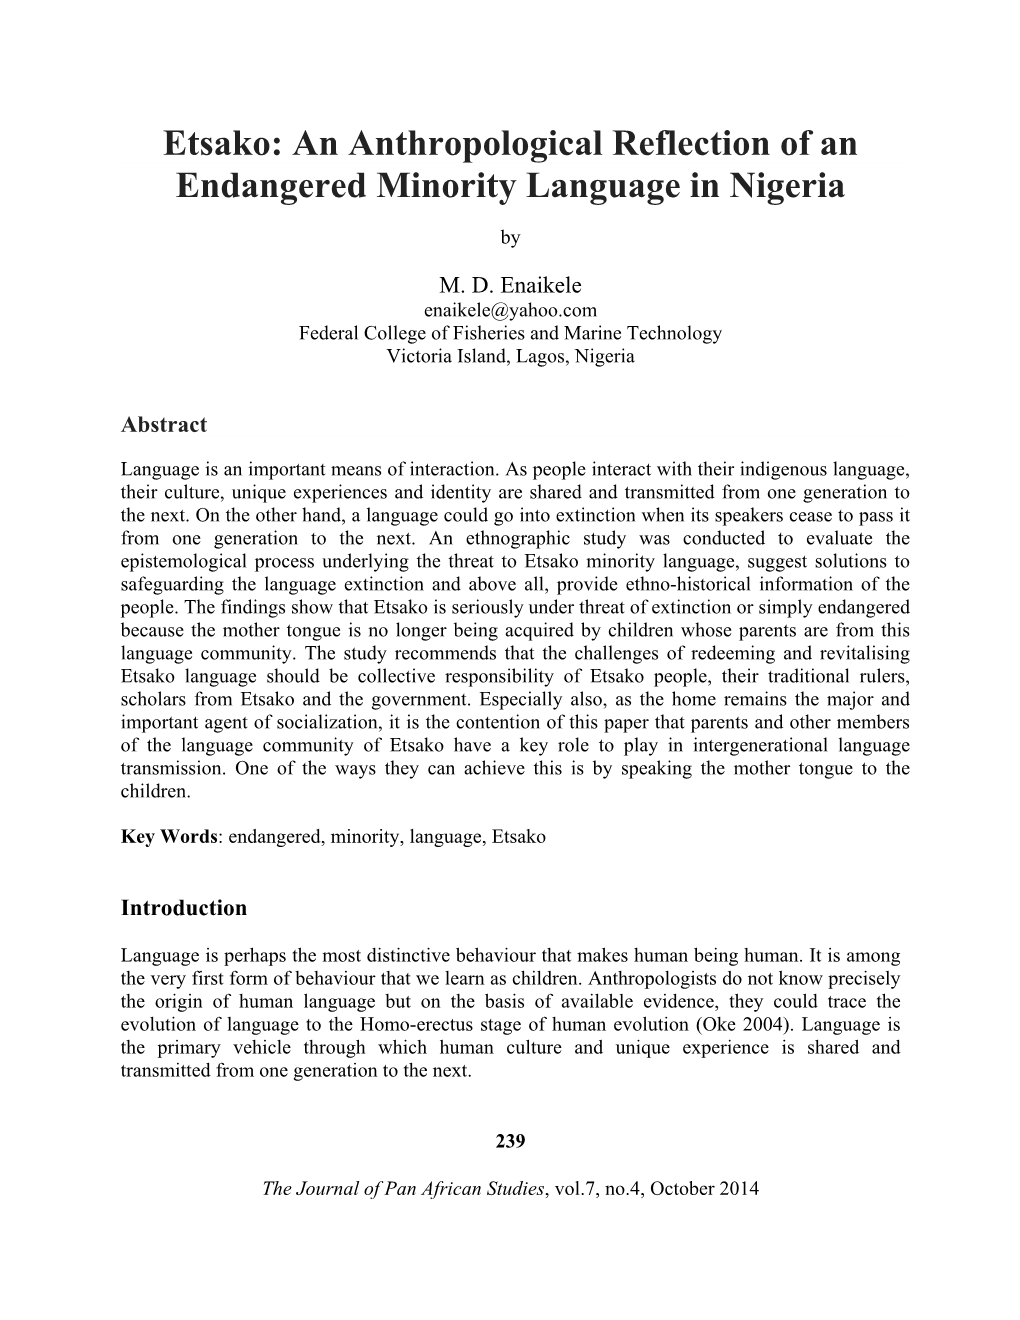 Etsako: an Anthropological Reflection of an Endangered Minority Language in Nigeria